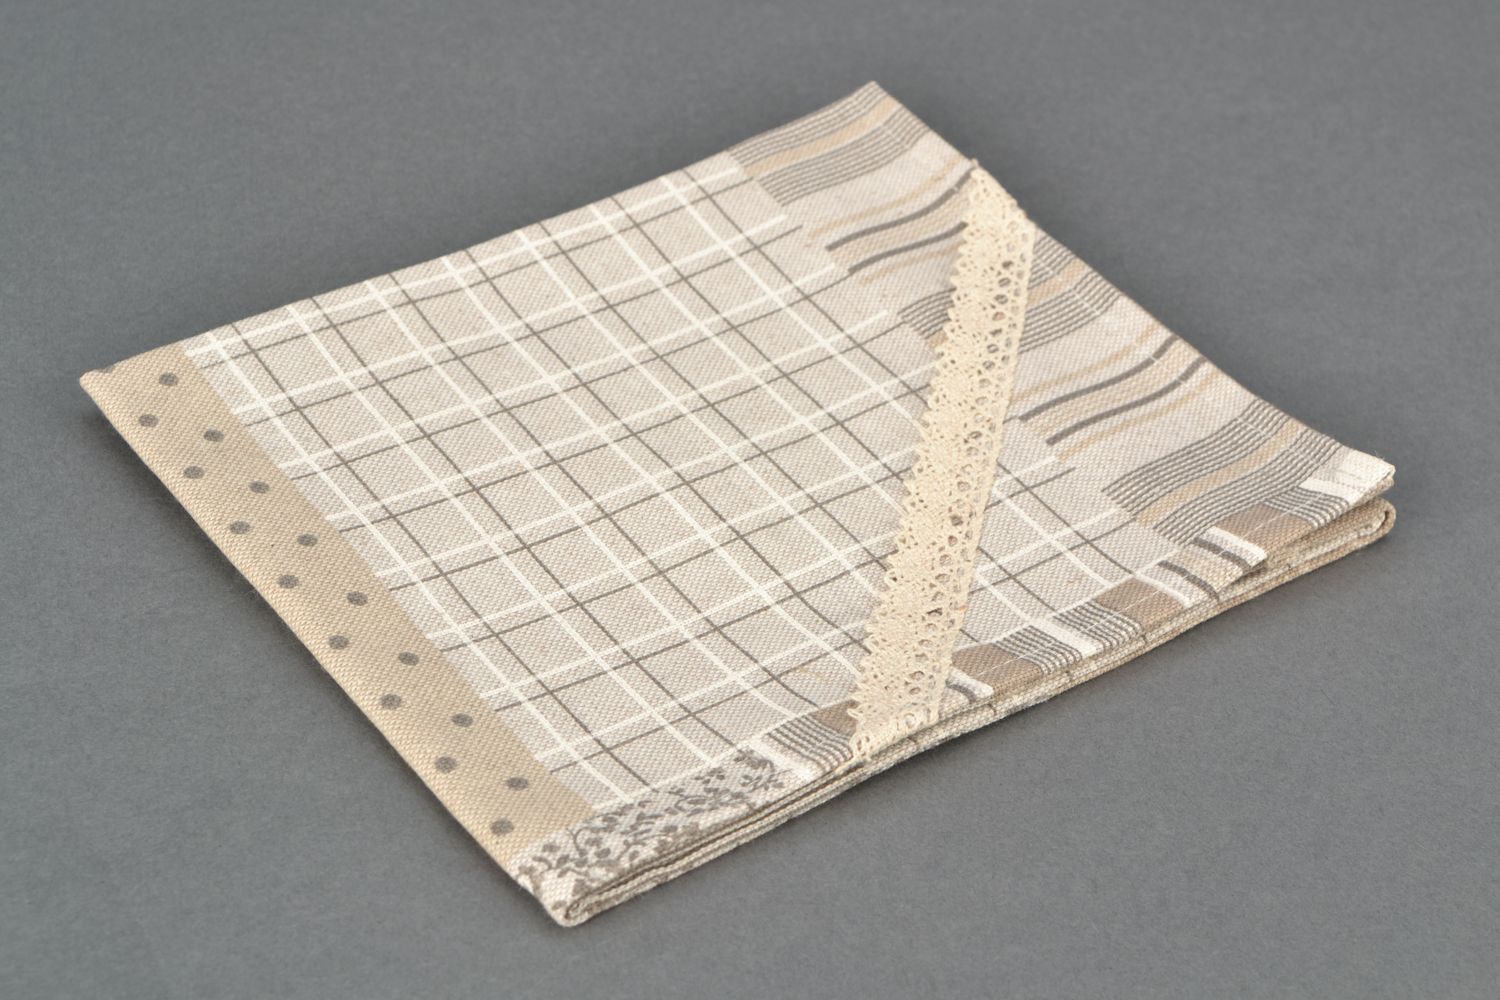 Napperon décoratif carré en coton beige et gris de style patchwork fait main photo 3